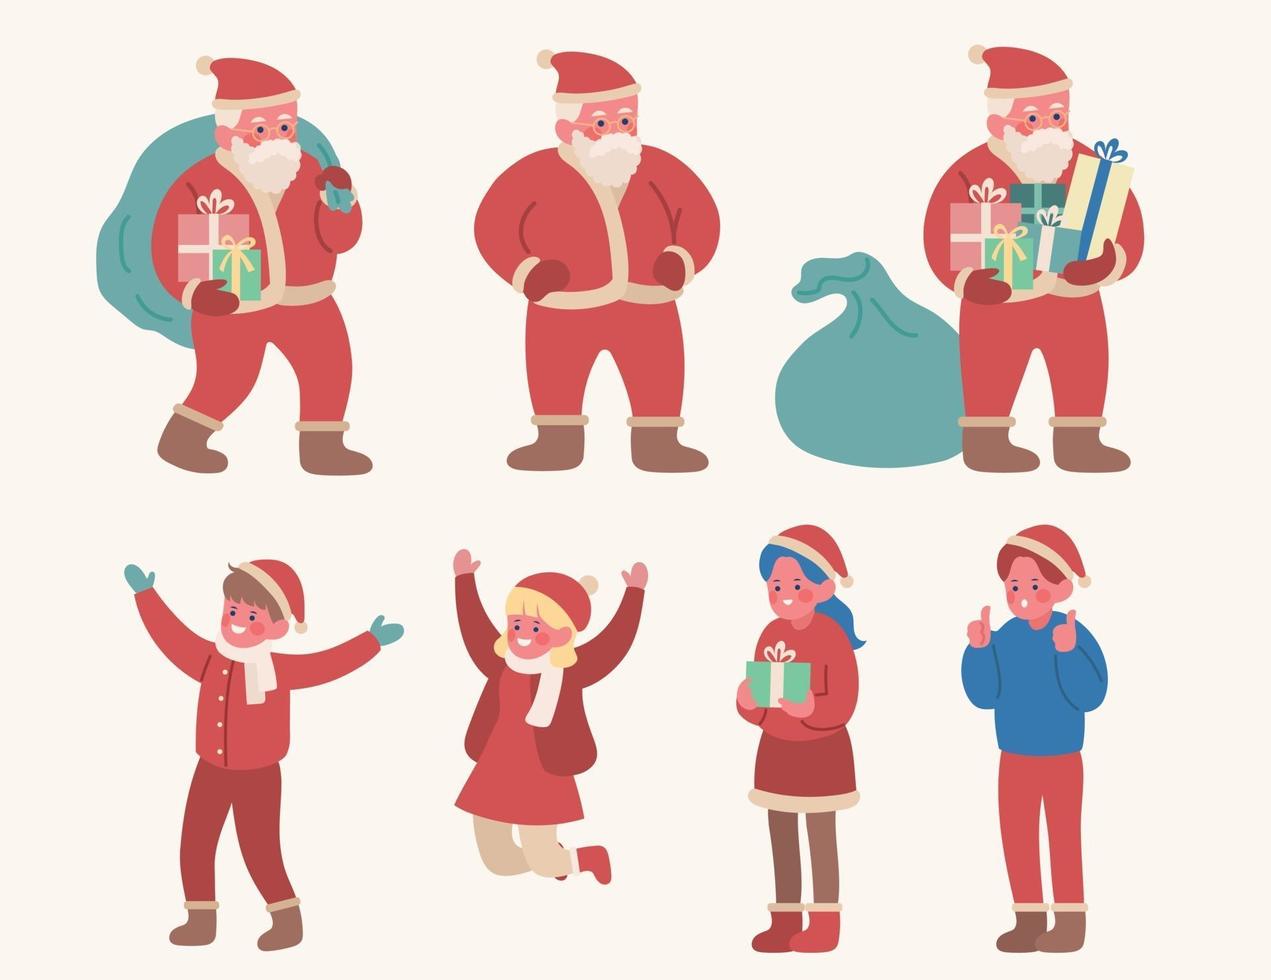 Babbo Natale e simpatici personaggi per bambini. illustrazioni di disegno vettoriale stile disegnato a mano.